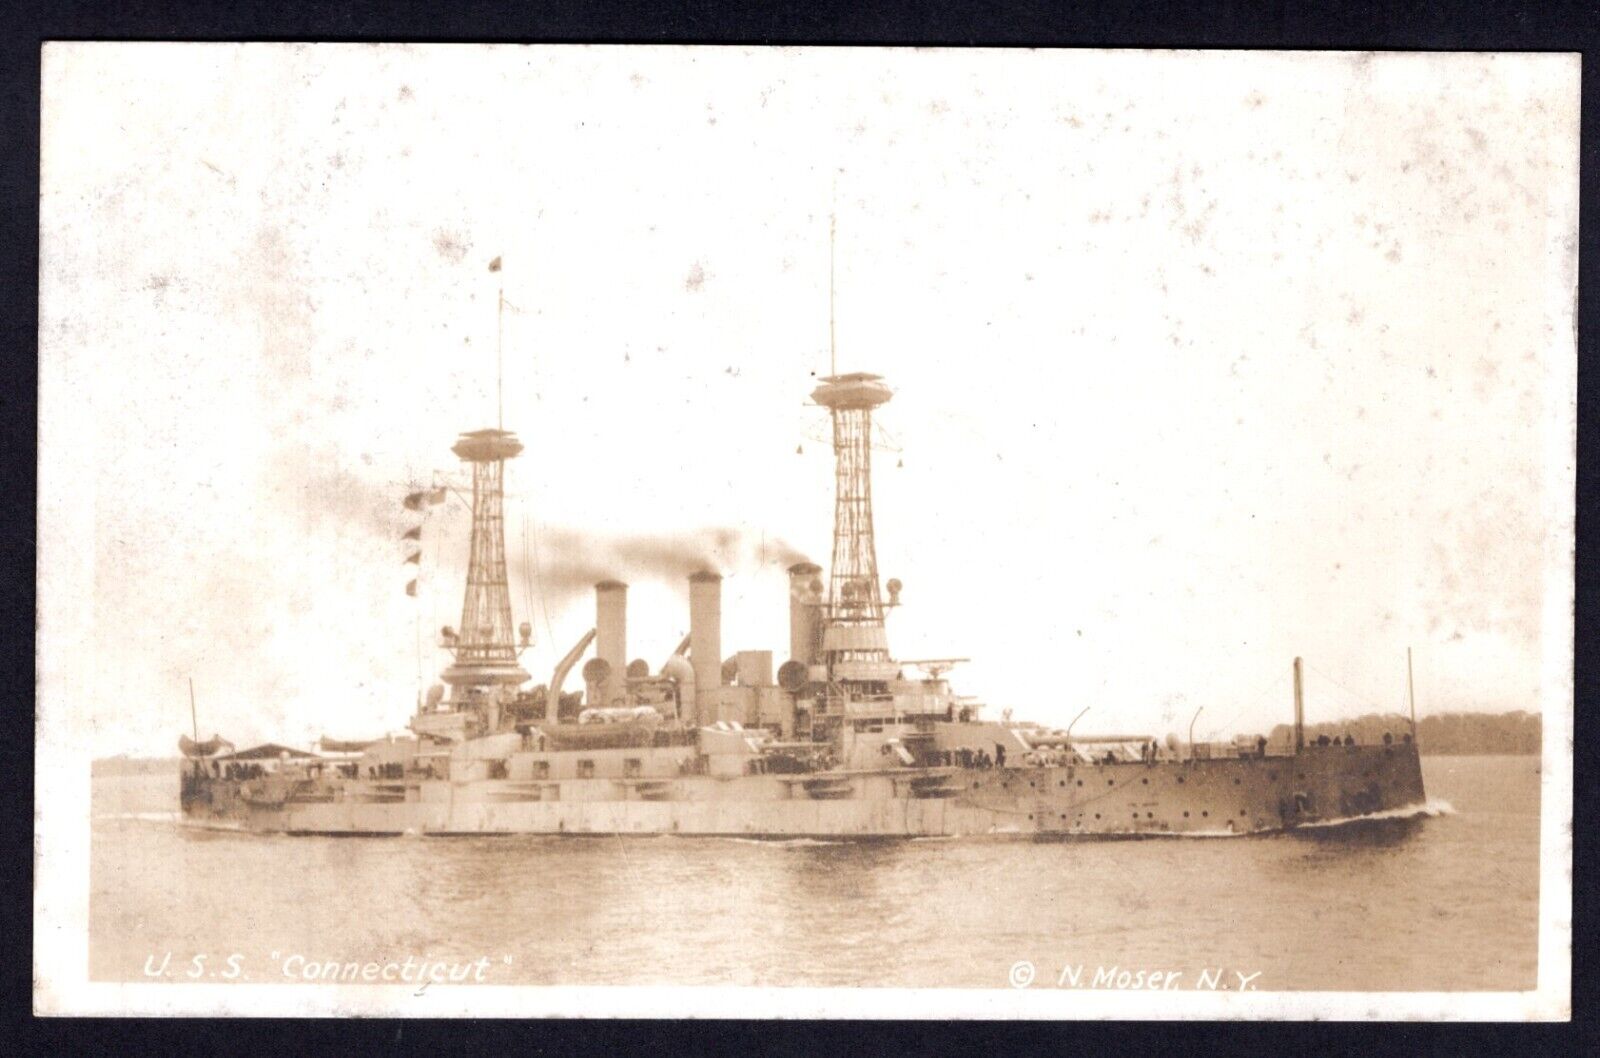 USS Connecticut Battleship RPPC Real Photo Vintage Postcard Unused N. Moser NY